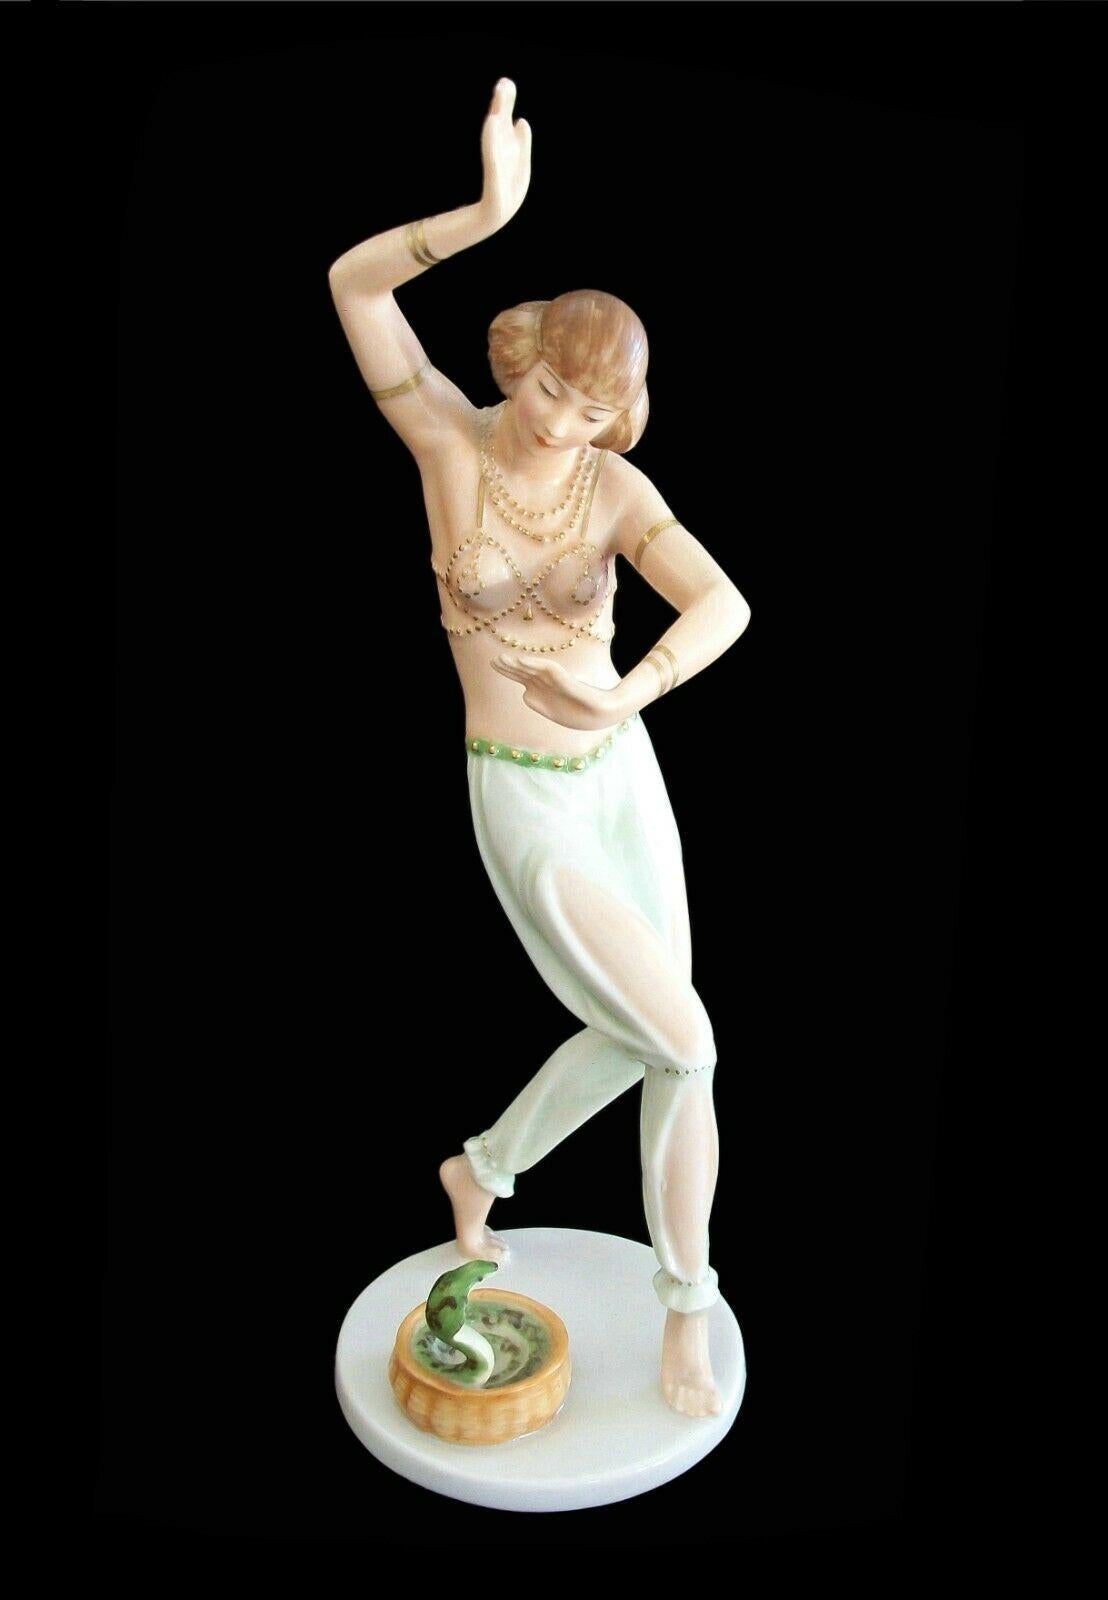 Rosenthal- Gustav Oppel (1891-1978) - 'Salambo' - Modellnummer 956/2 - Feine Art Deco 'Schlangenbeschwörer' Porzellanfigur - handbemalt - mit vergoldeten Details an Mieder, Taille und Armschmuck - signiert mit grüner Unterglasurmarke und